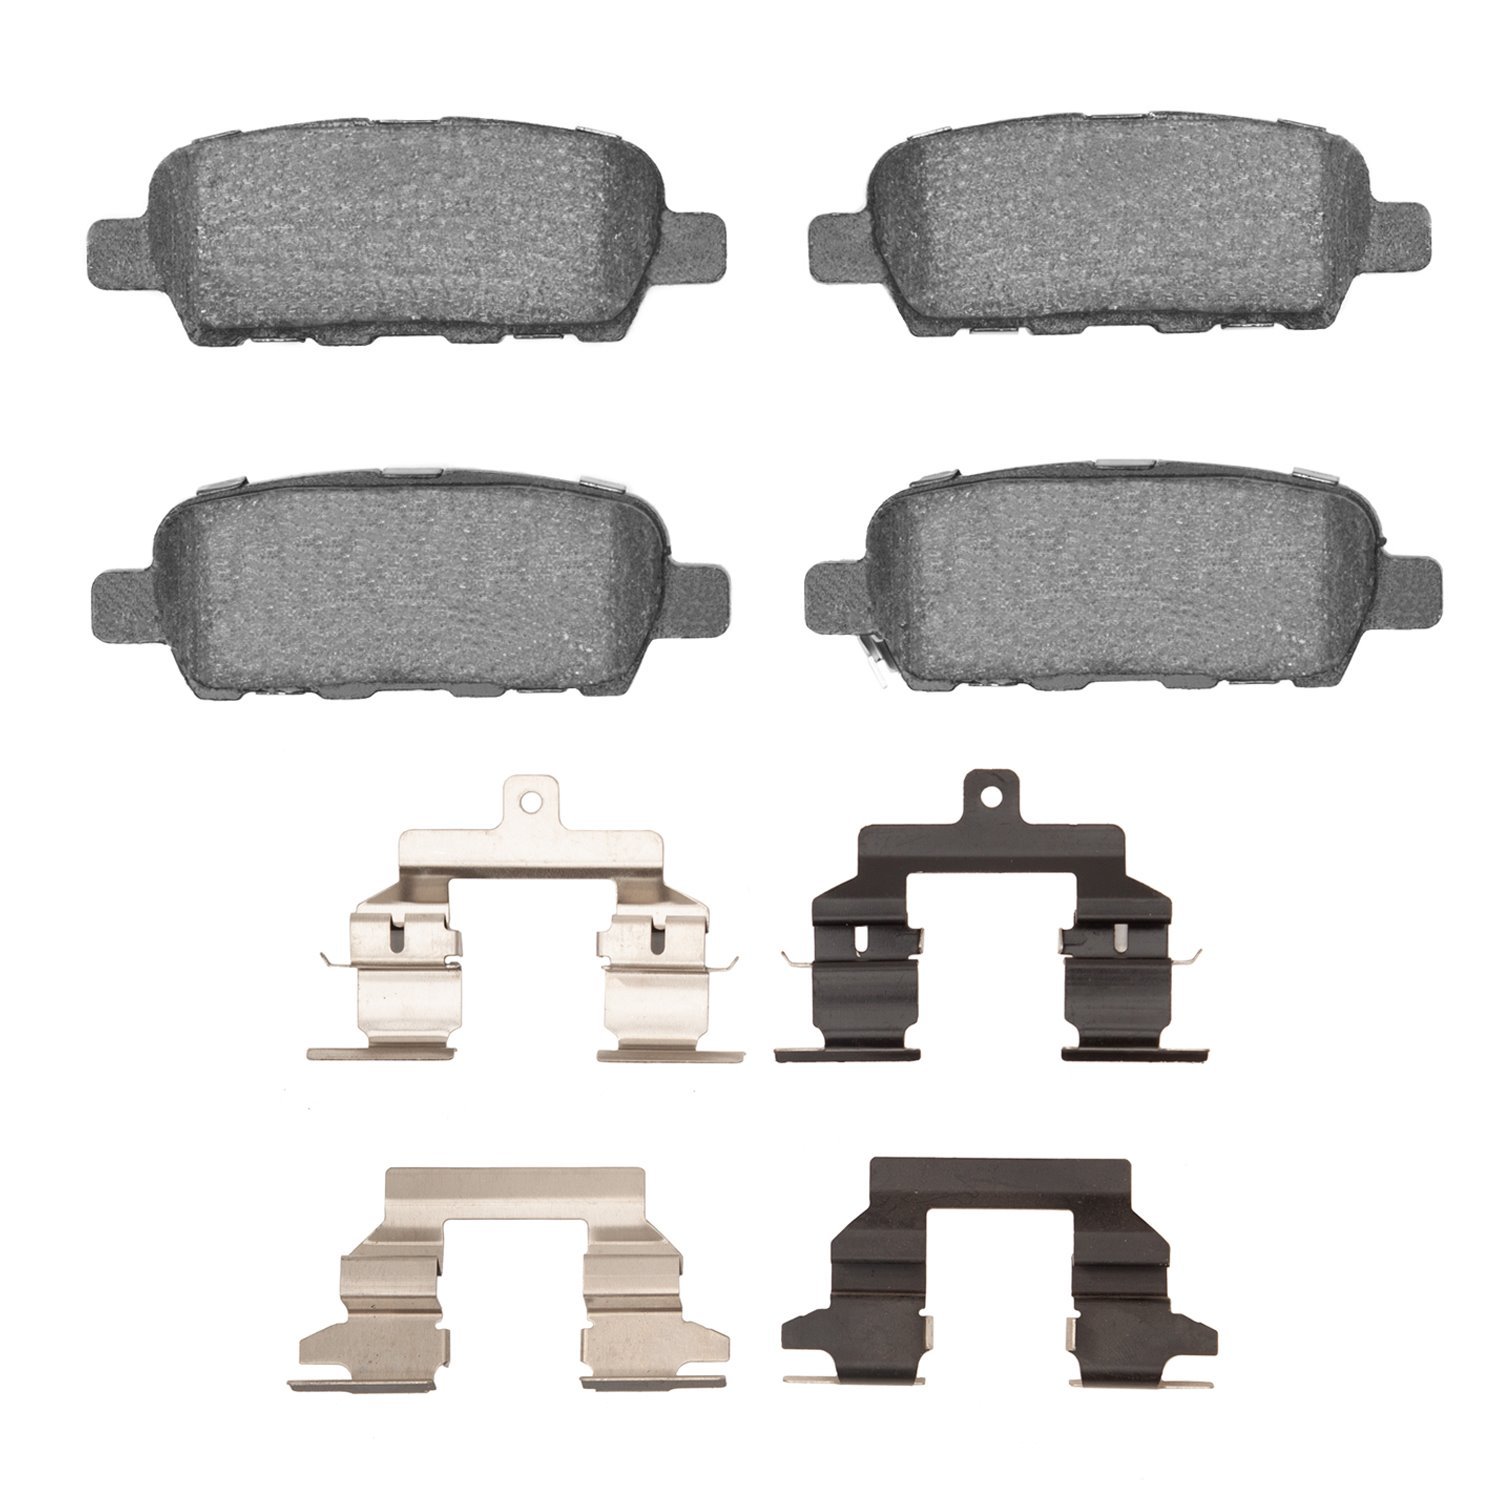 1600-0905-02 5000 Euro Ceramic Brake Pads & Hardware Kit, 2008-2013 Infiniti/Nissan, Position: Rear